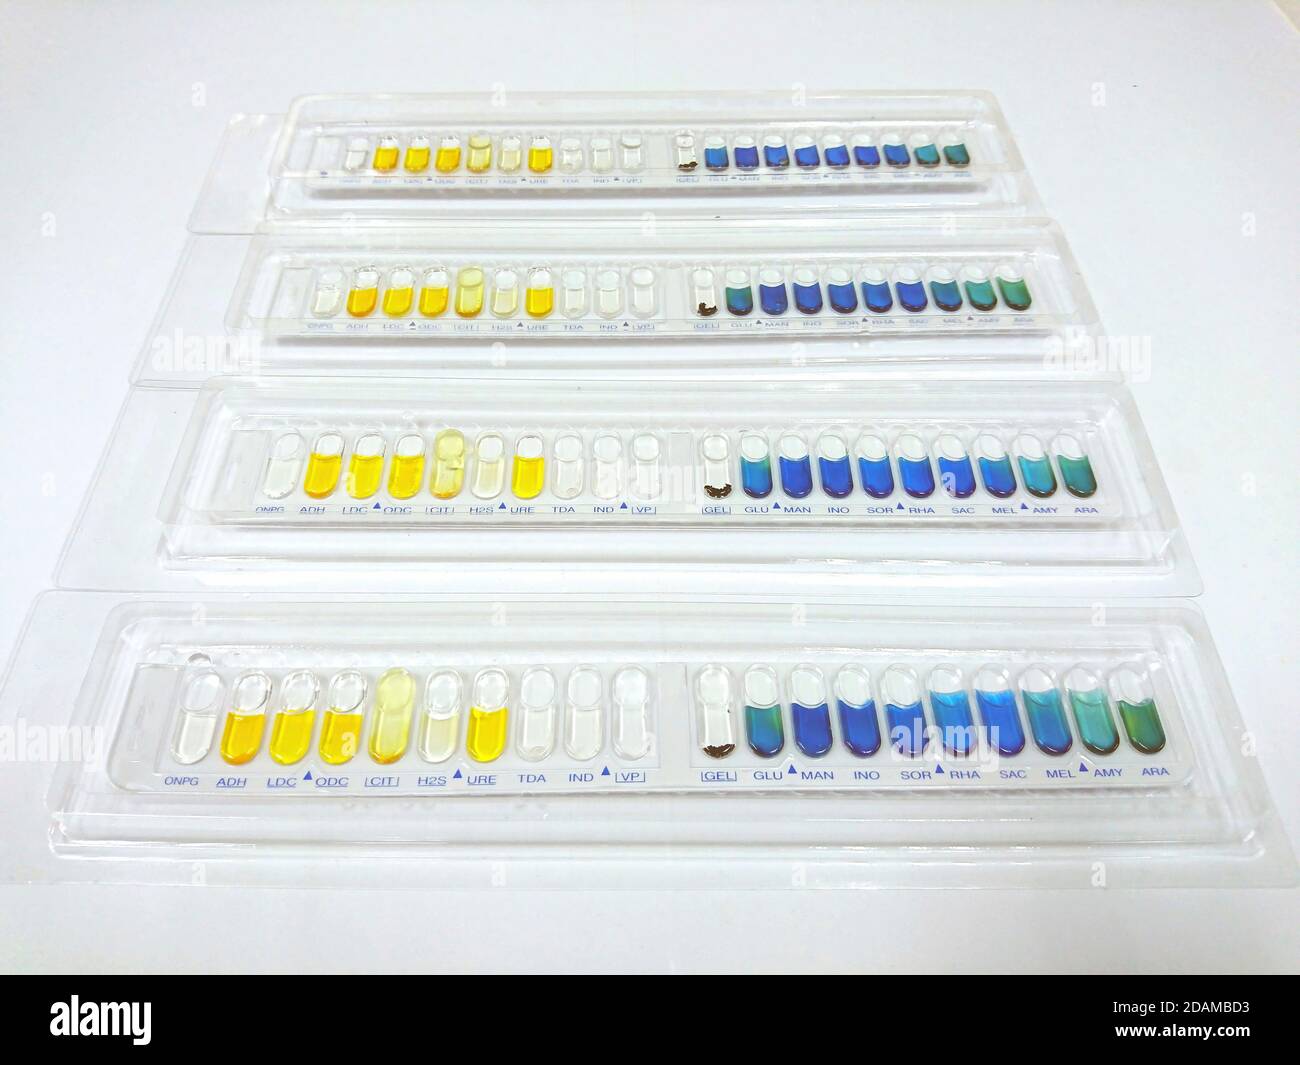 Kits de test d'identification des bactéries pour l'identification des bactéries à Gram positif et à Gram négatif et des levures. Banque D'Images